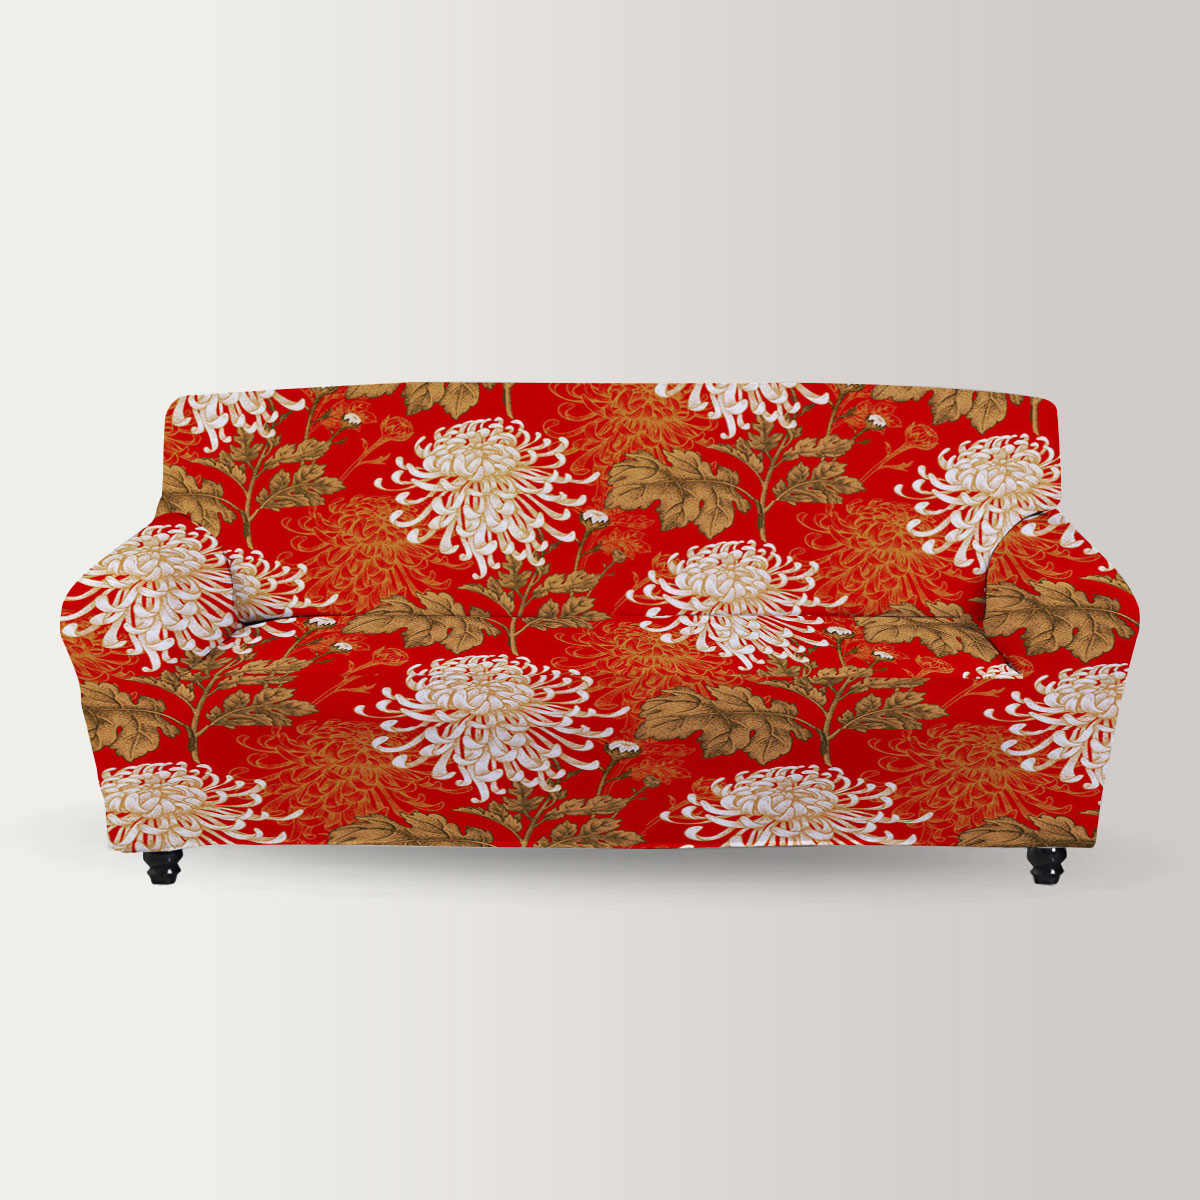 Chinese Chrysanthemum Sofa Cover